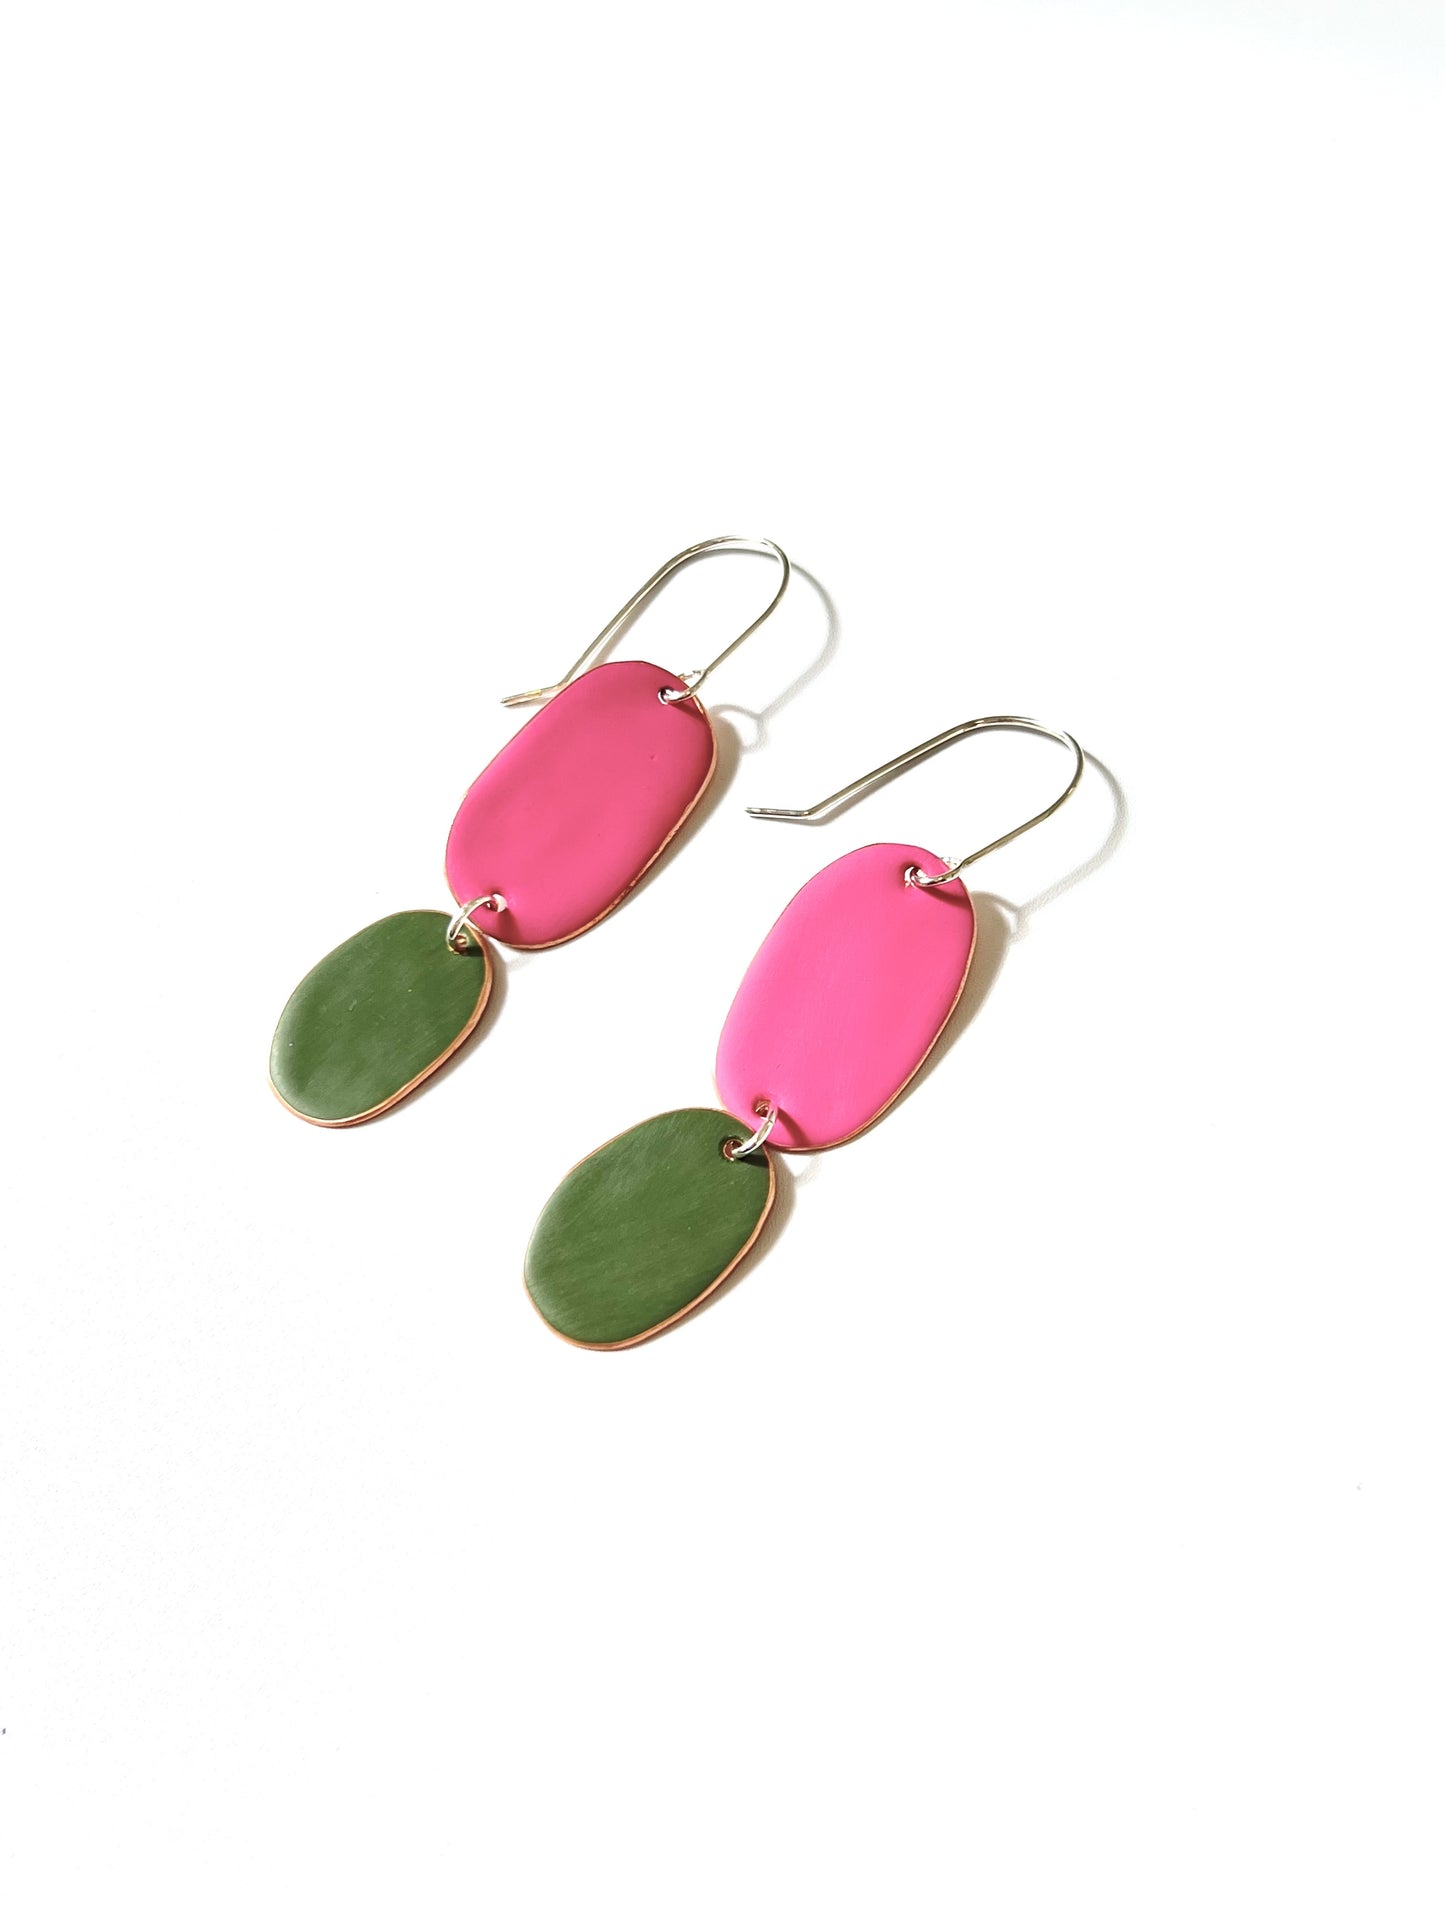 Double Drop Earrings -  Neon/Olive